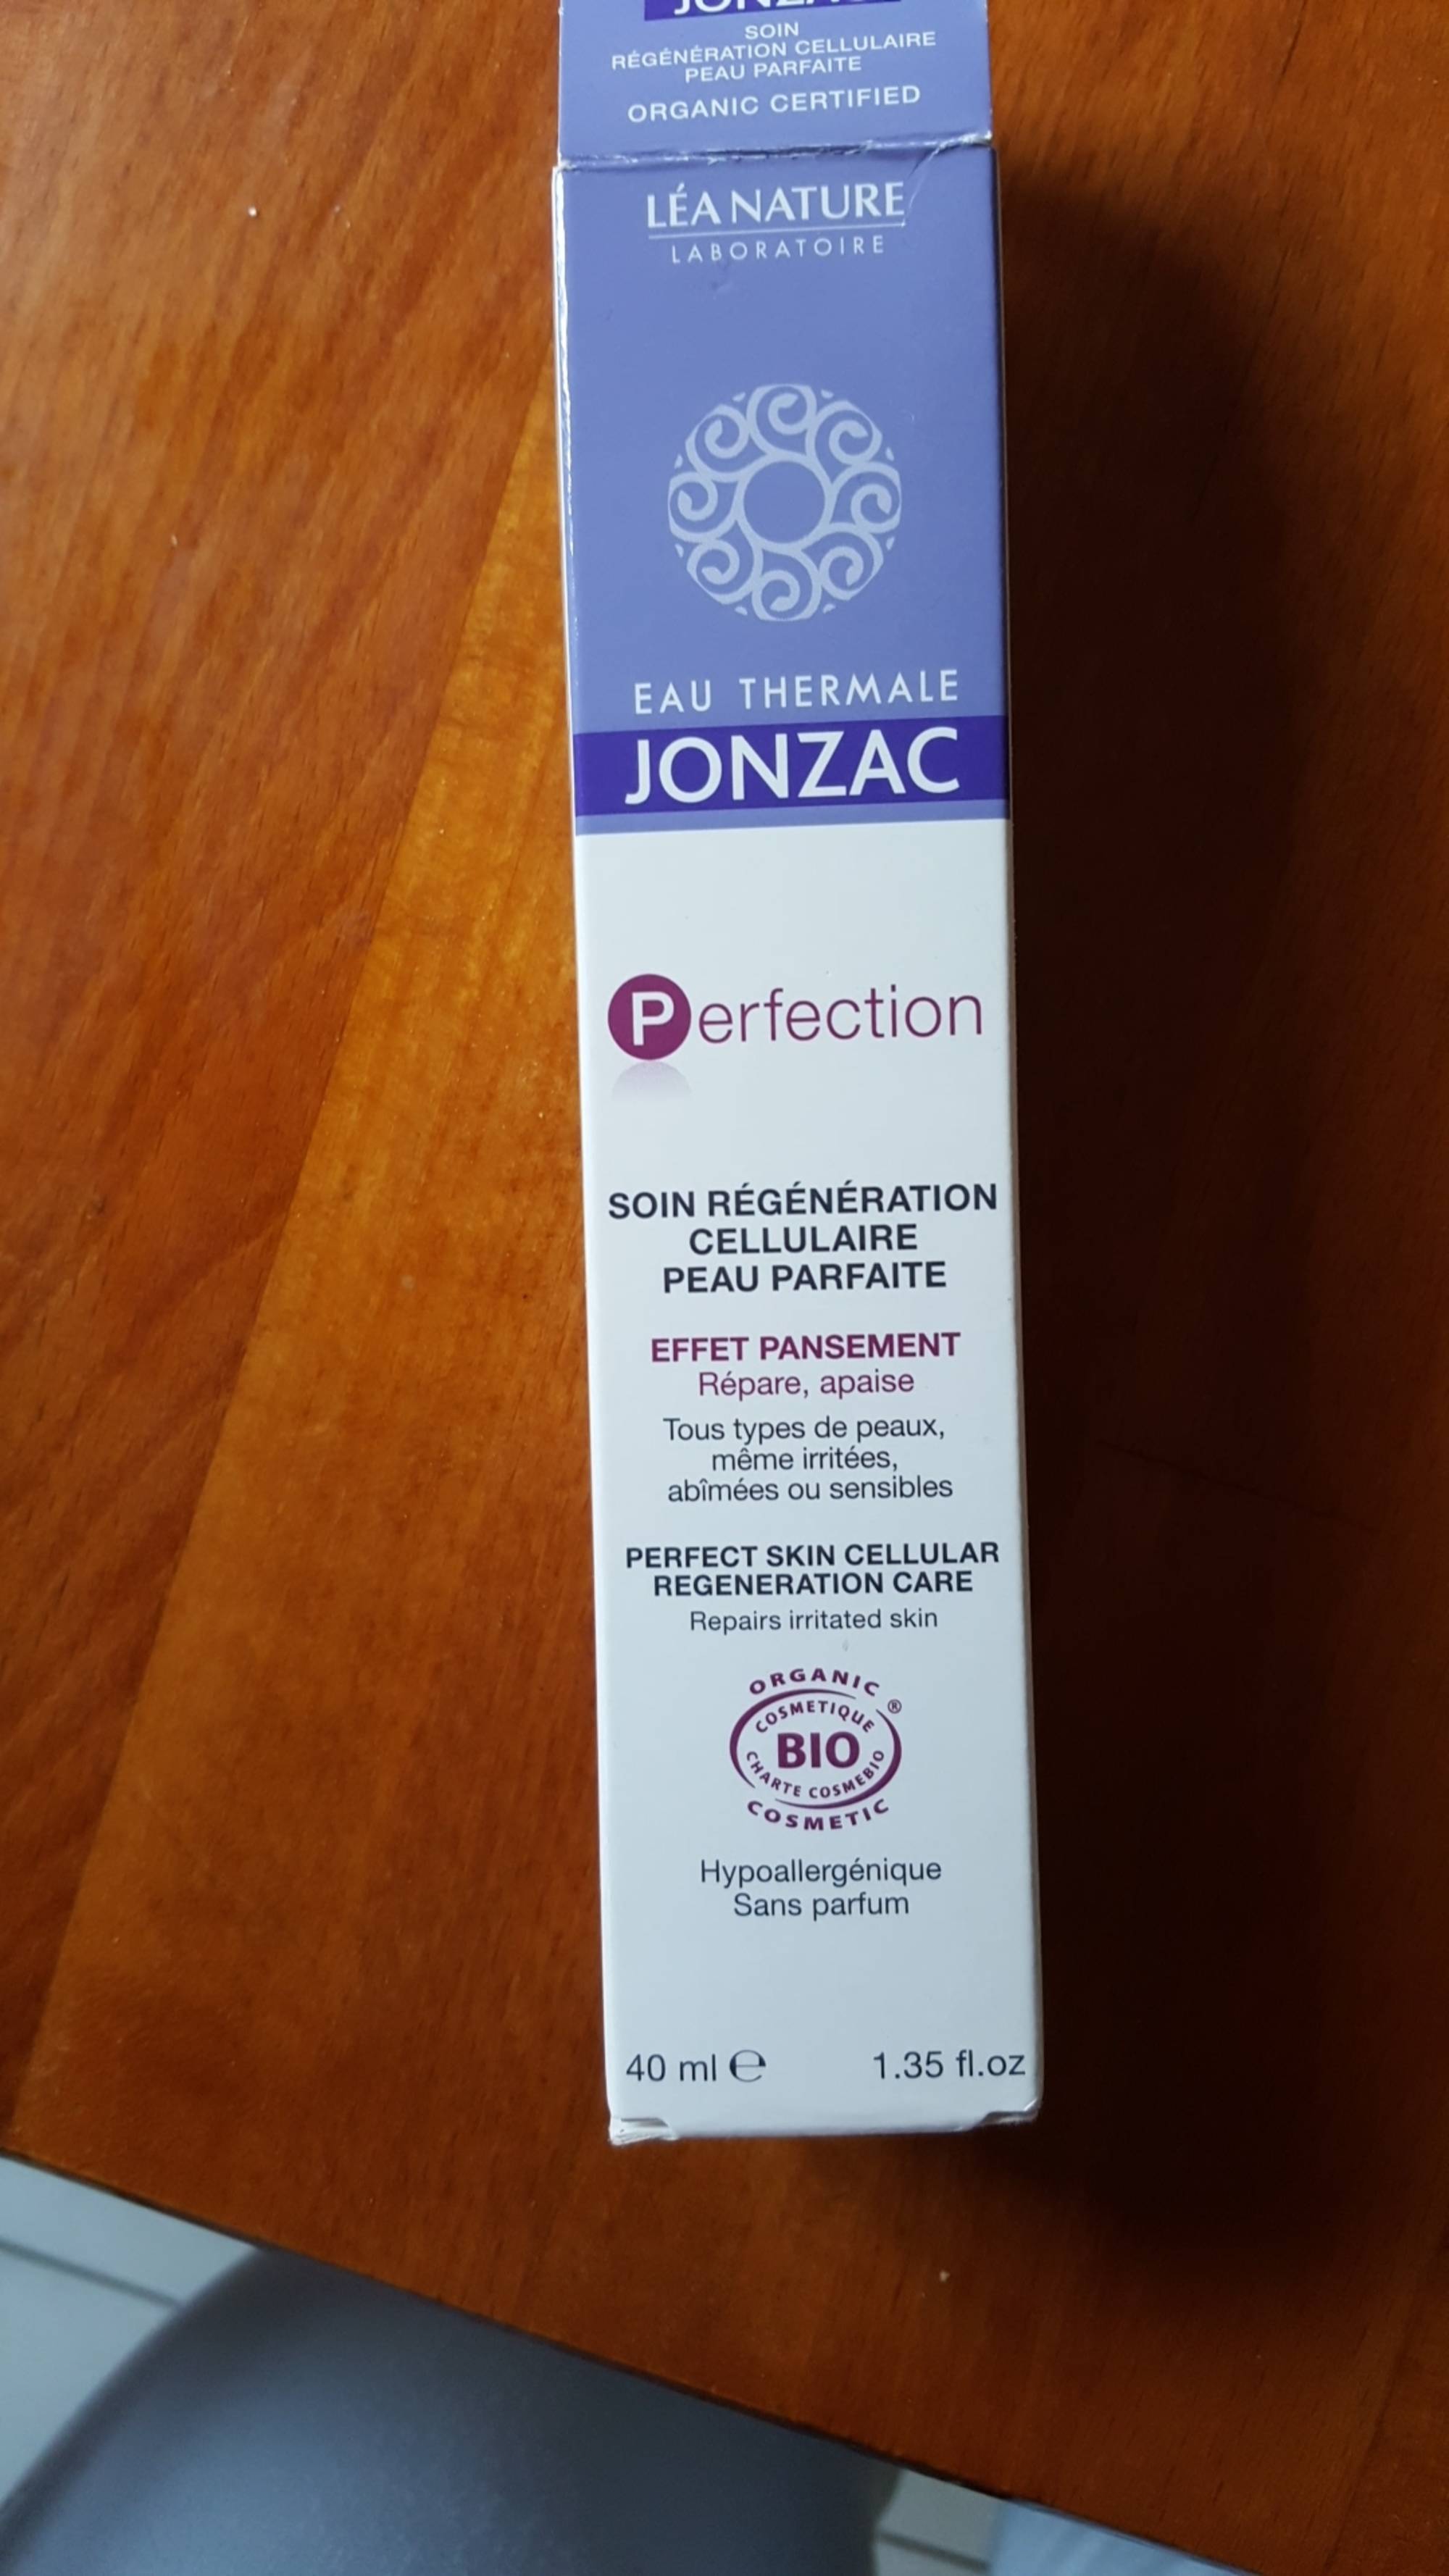 JONZAC - Perfection - Soin régénération cellulaire peau parfaite